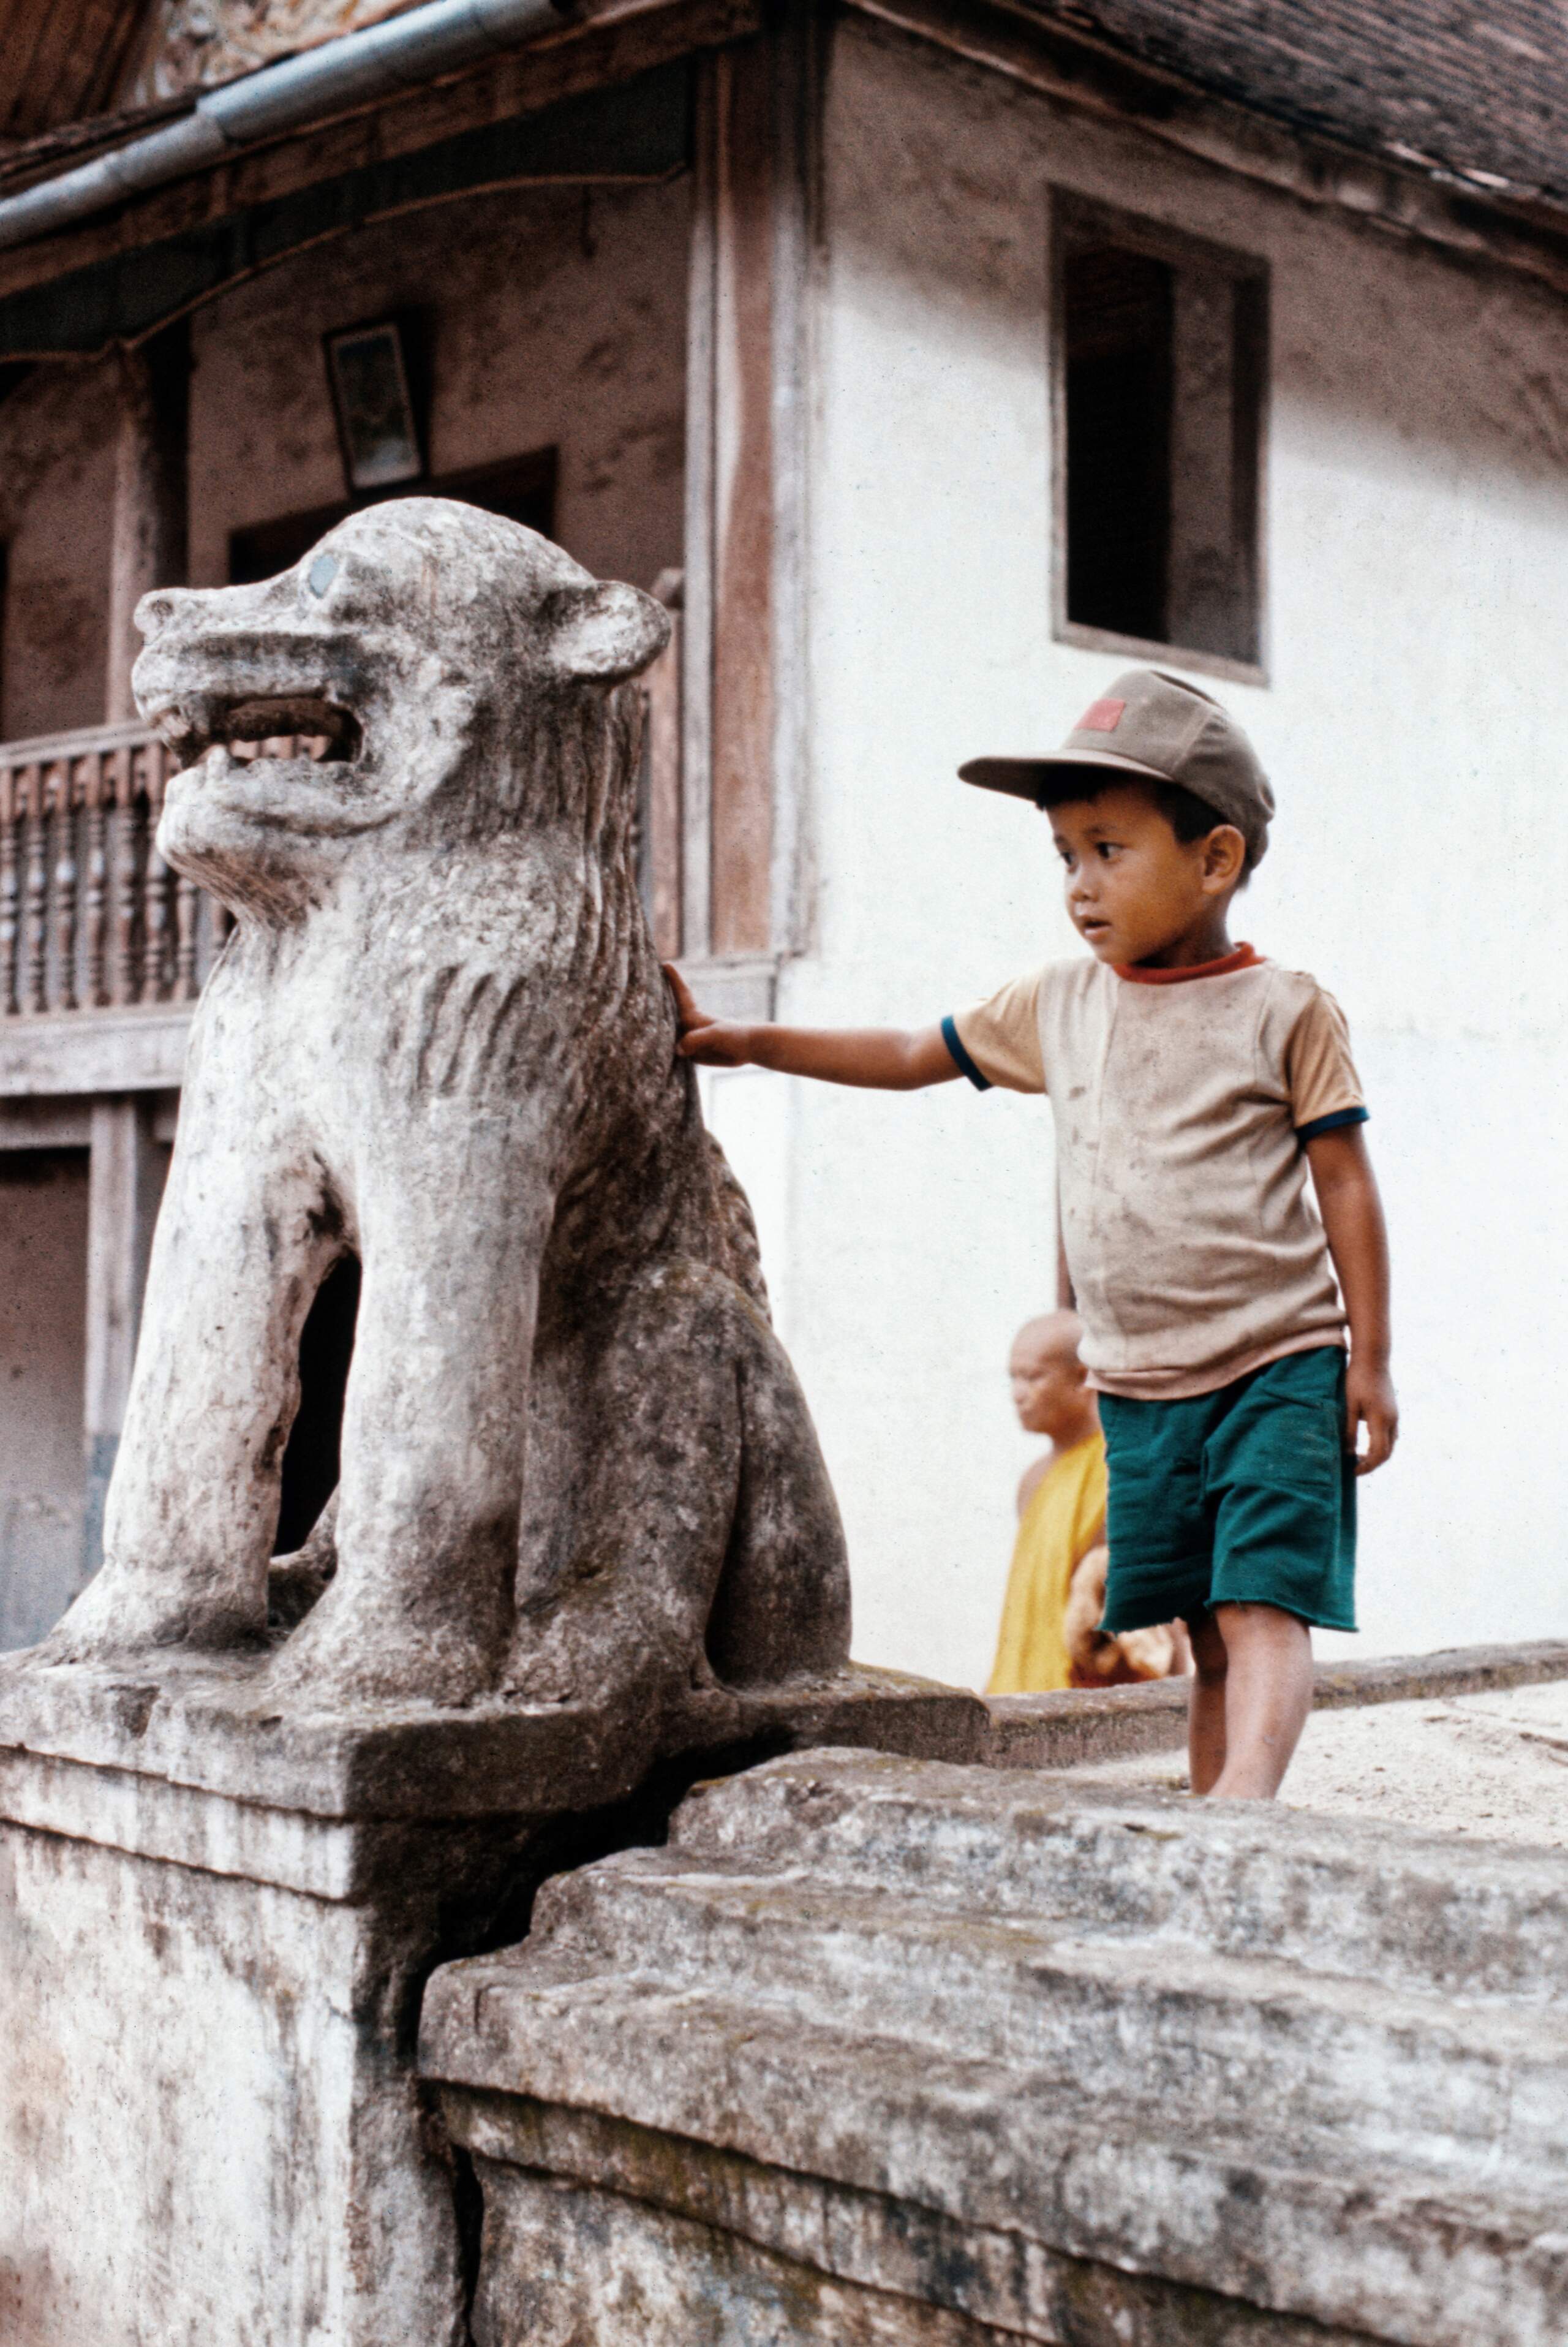 Concours photo de septembre 2023 : Sculptures animalières - Page 3 Laos10